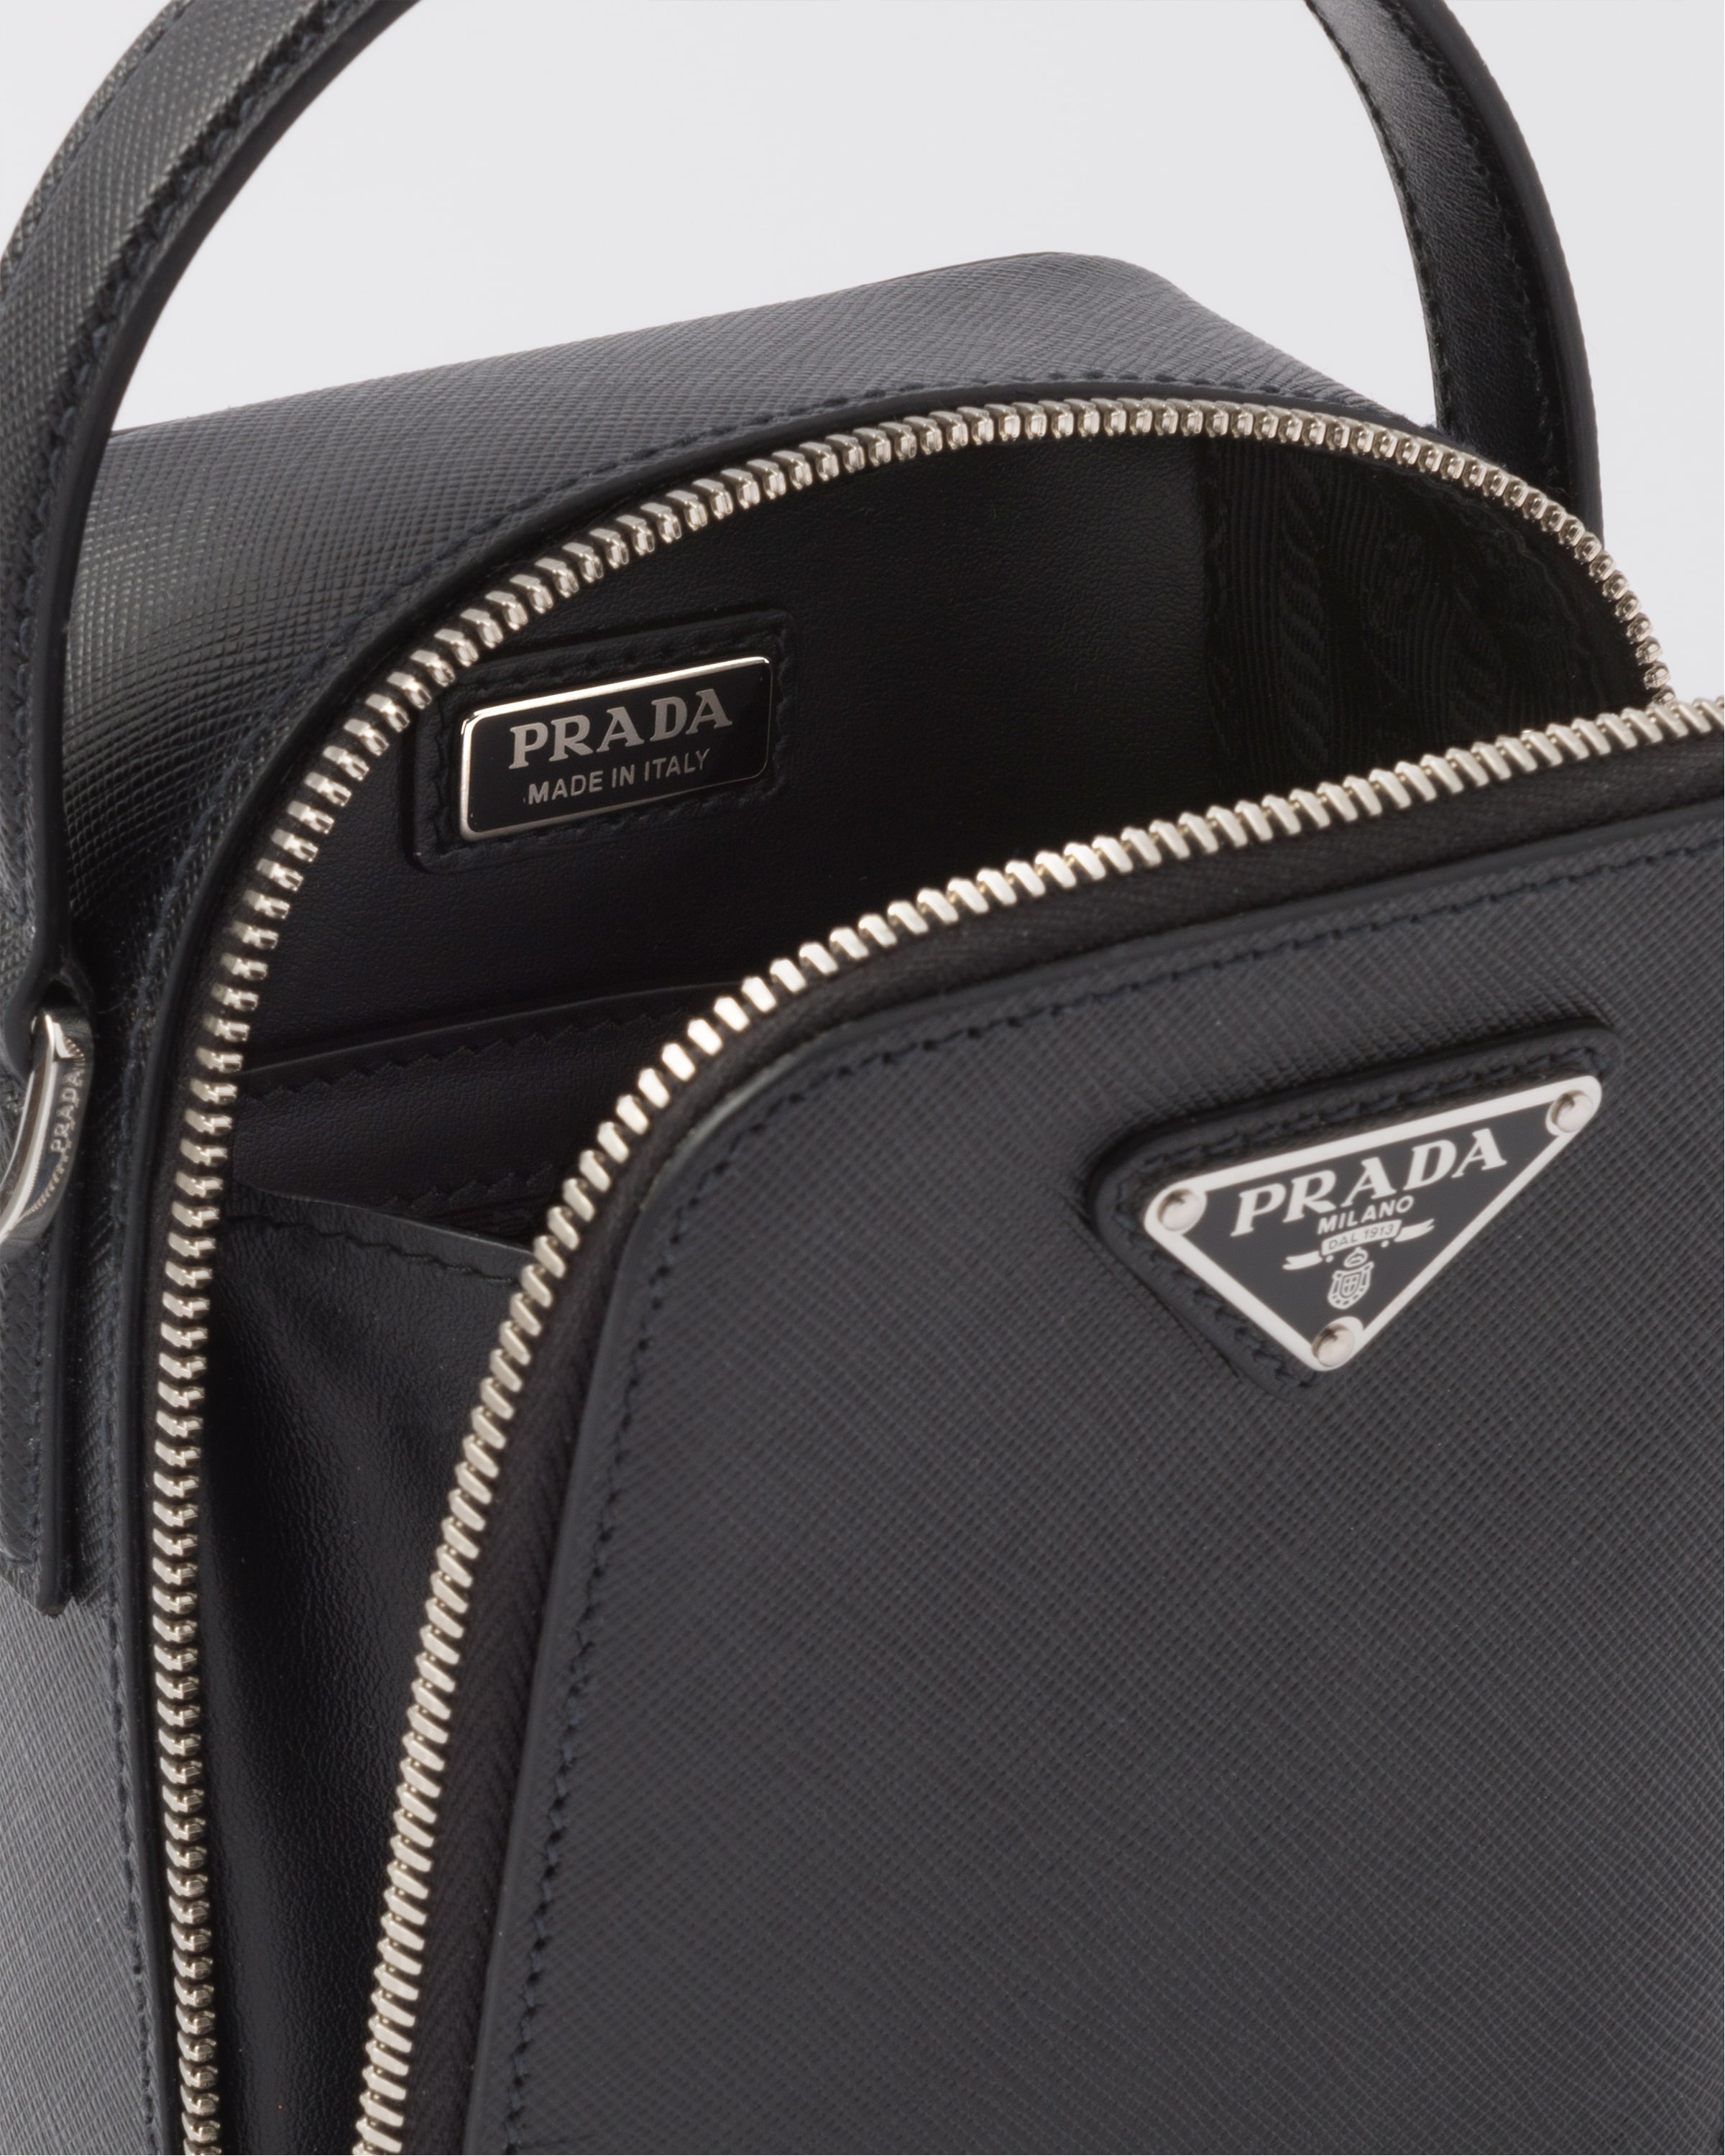 Prada Prada Brique Saffiano leather bag | REVERSIBLE